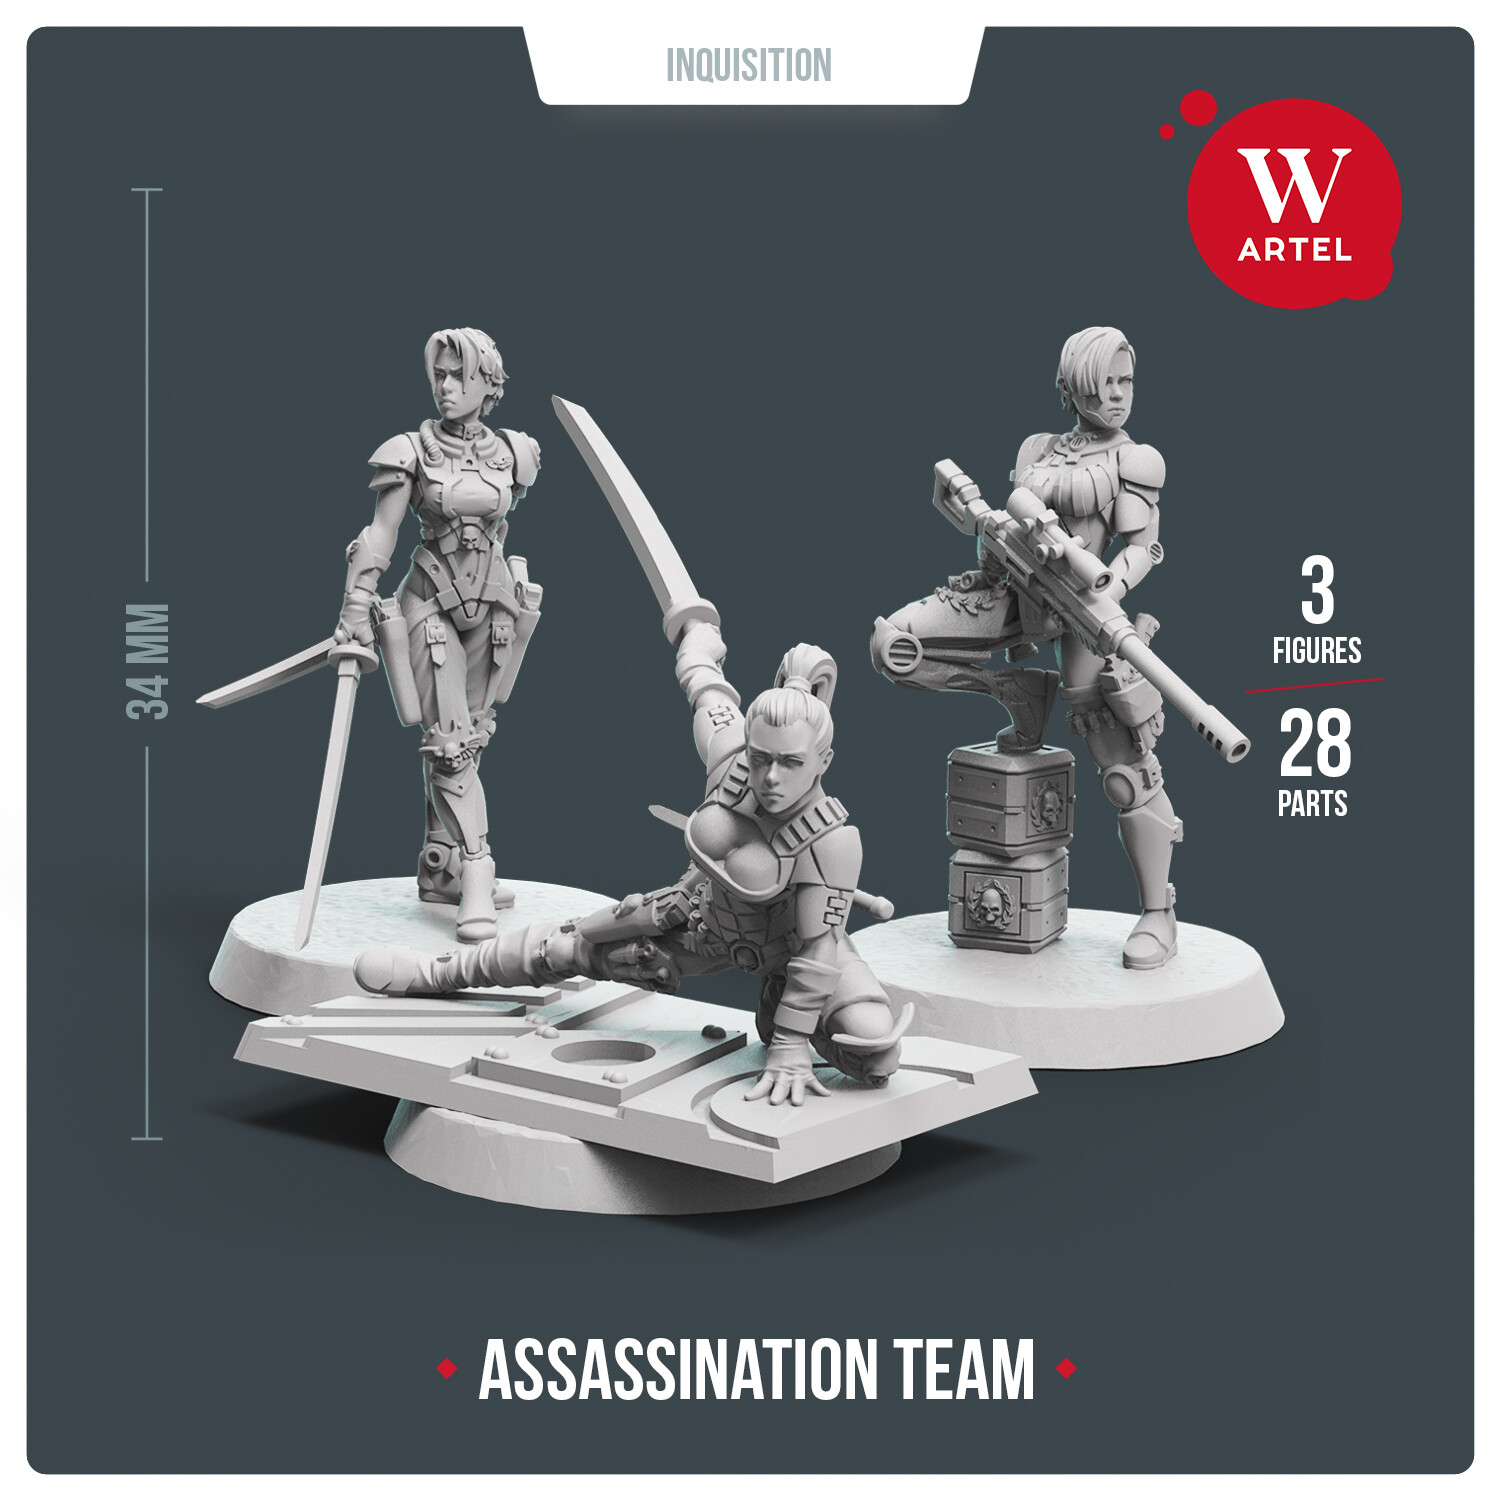 Assassination Team